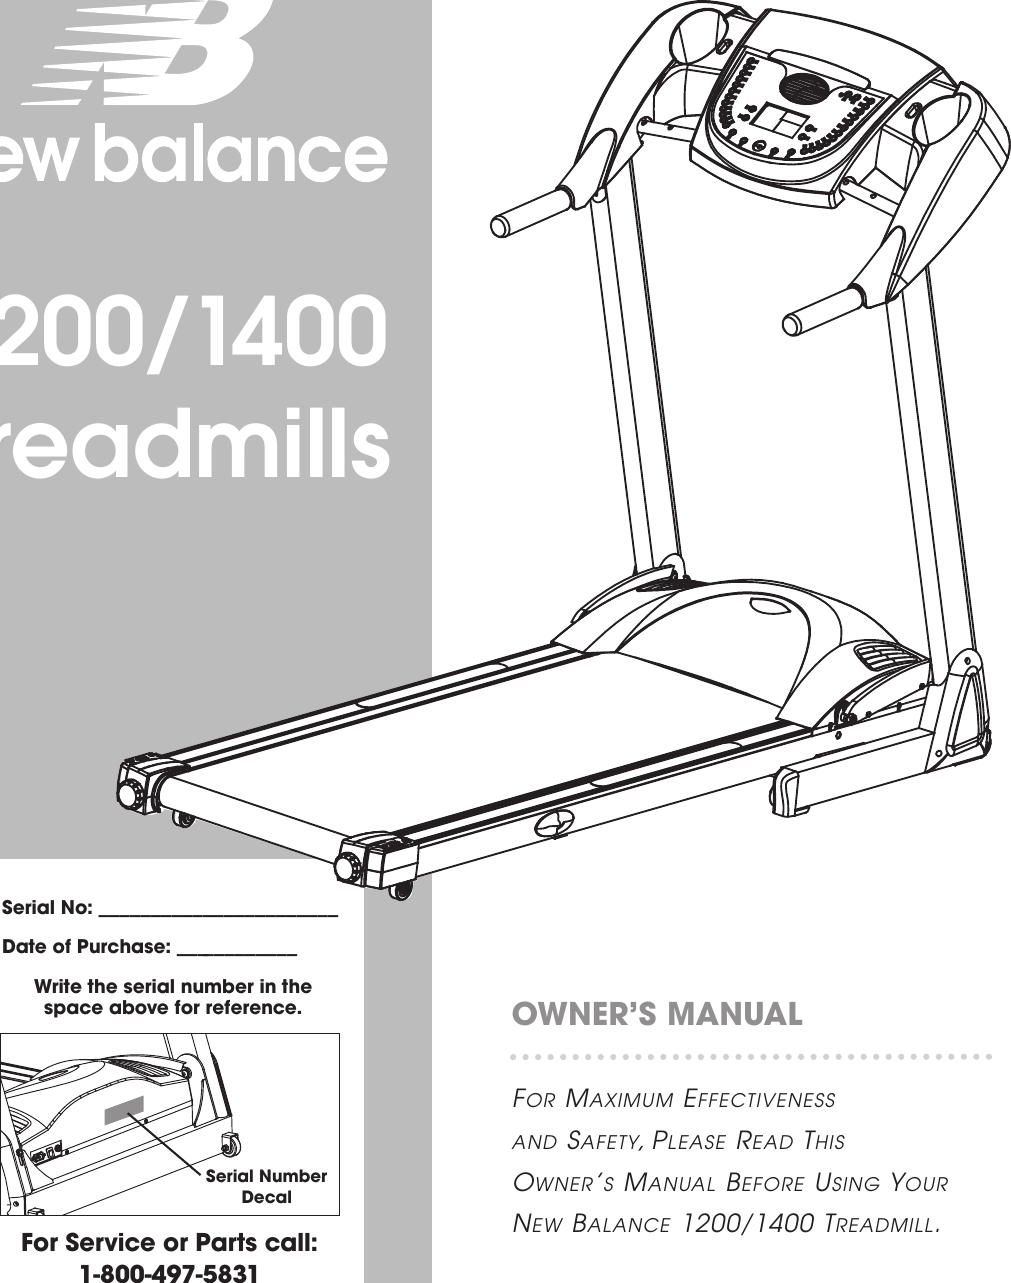 nb 1400 treadmill manual